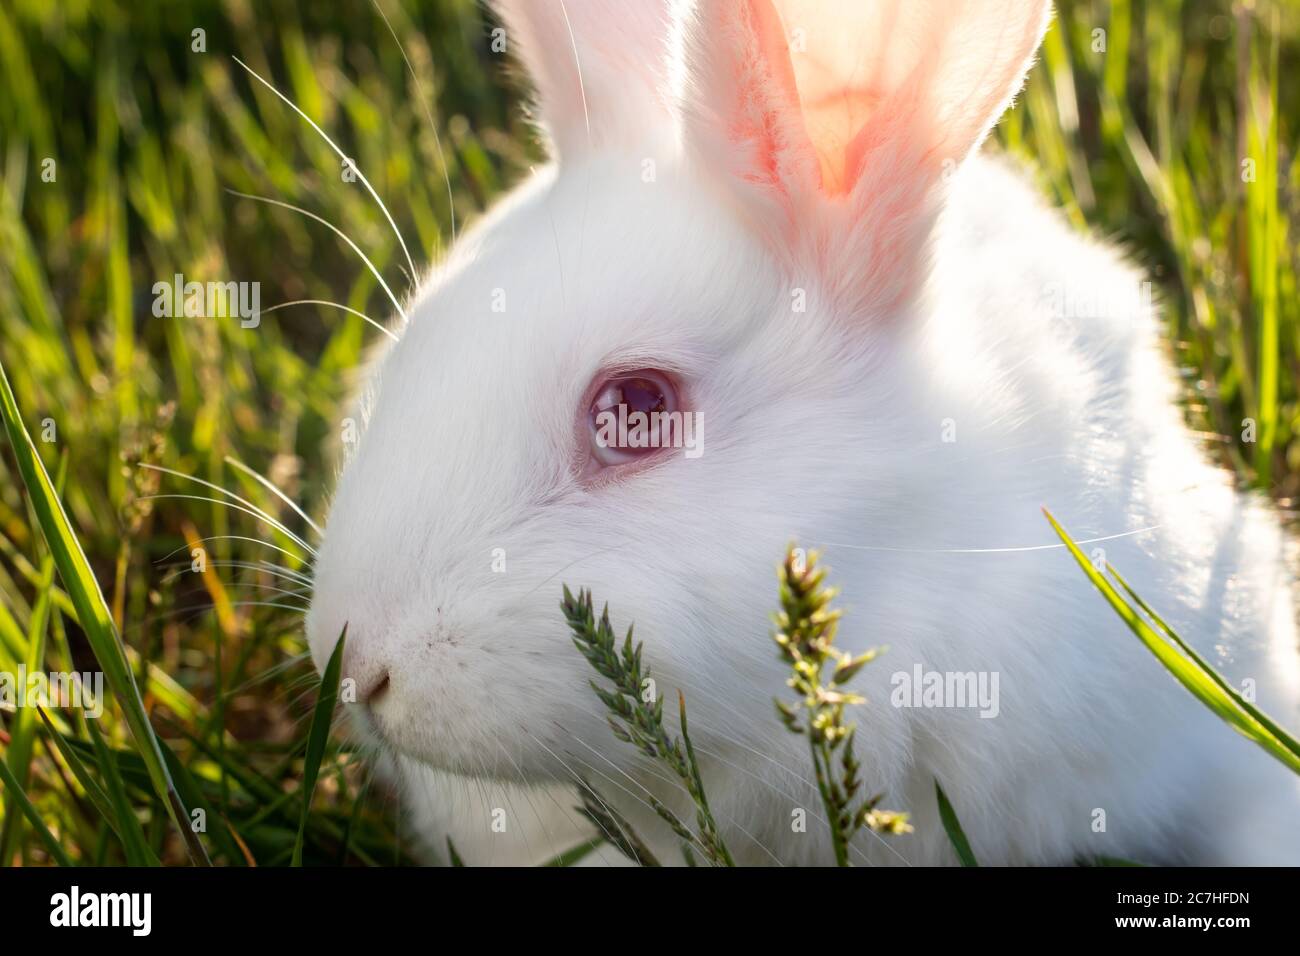 Le lapin blanc Pannon repose sur l'herbe verte. Viande grand lapin de gril. Banque D'Images